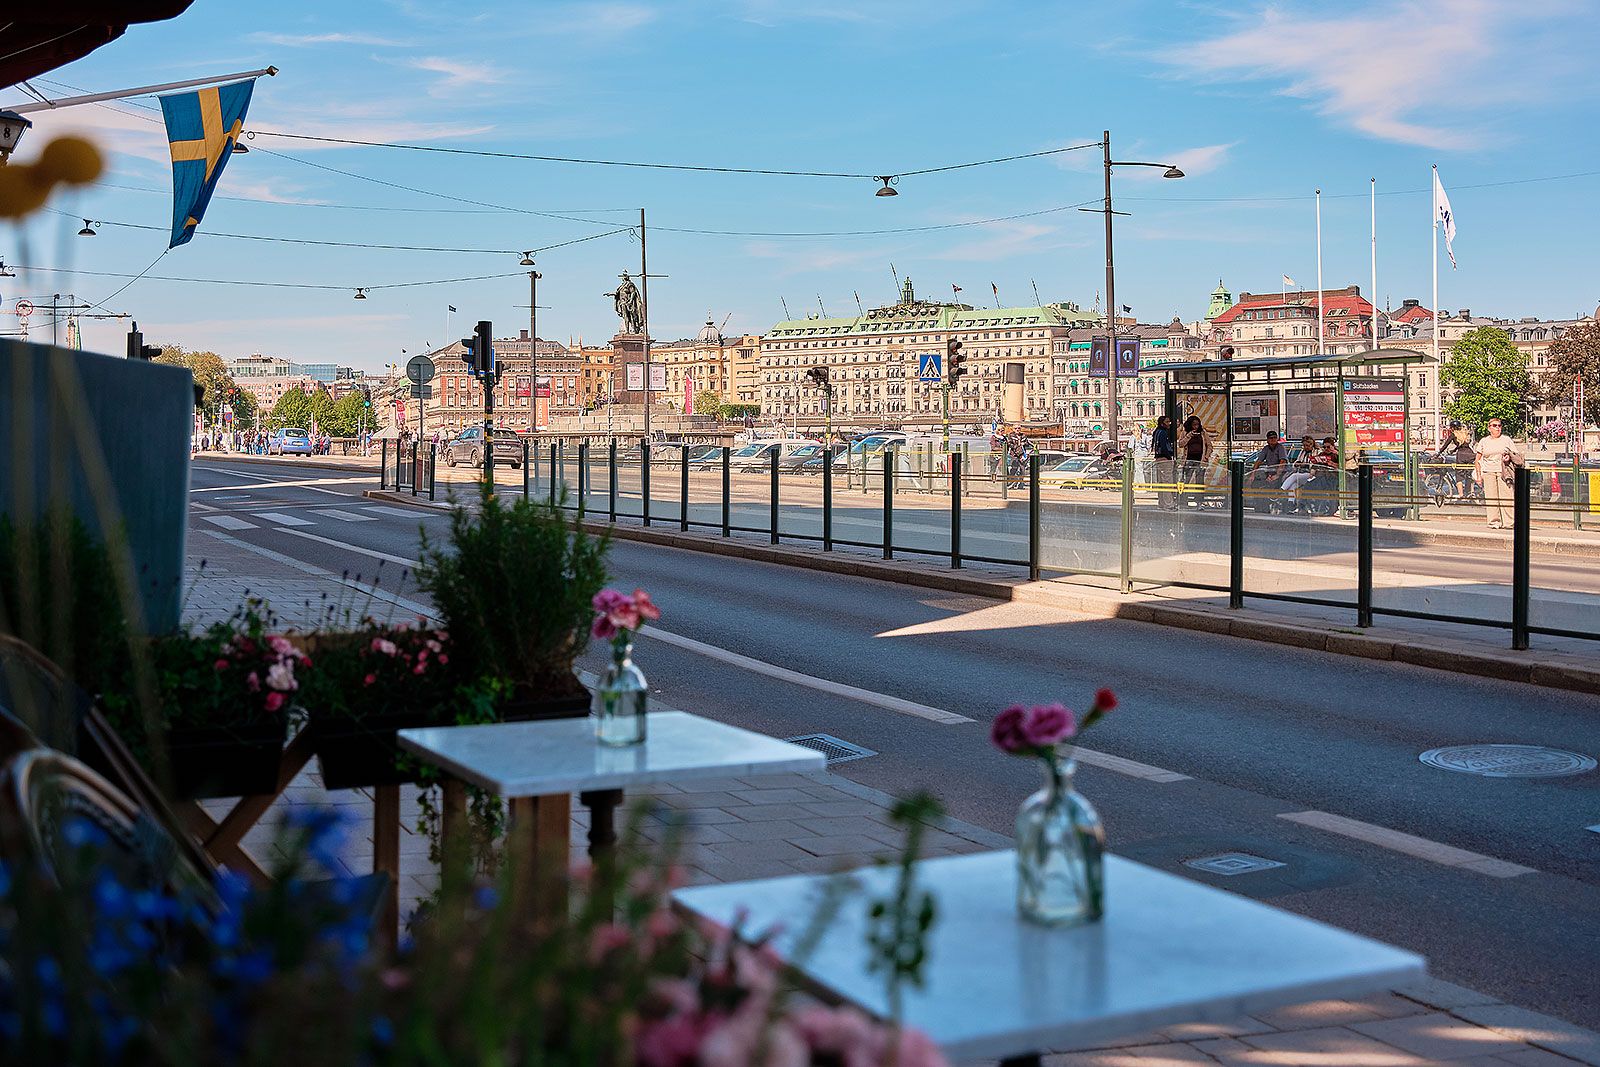 Restaurang Skeppsbron 10 – Sommaröppna restauranger